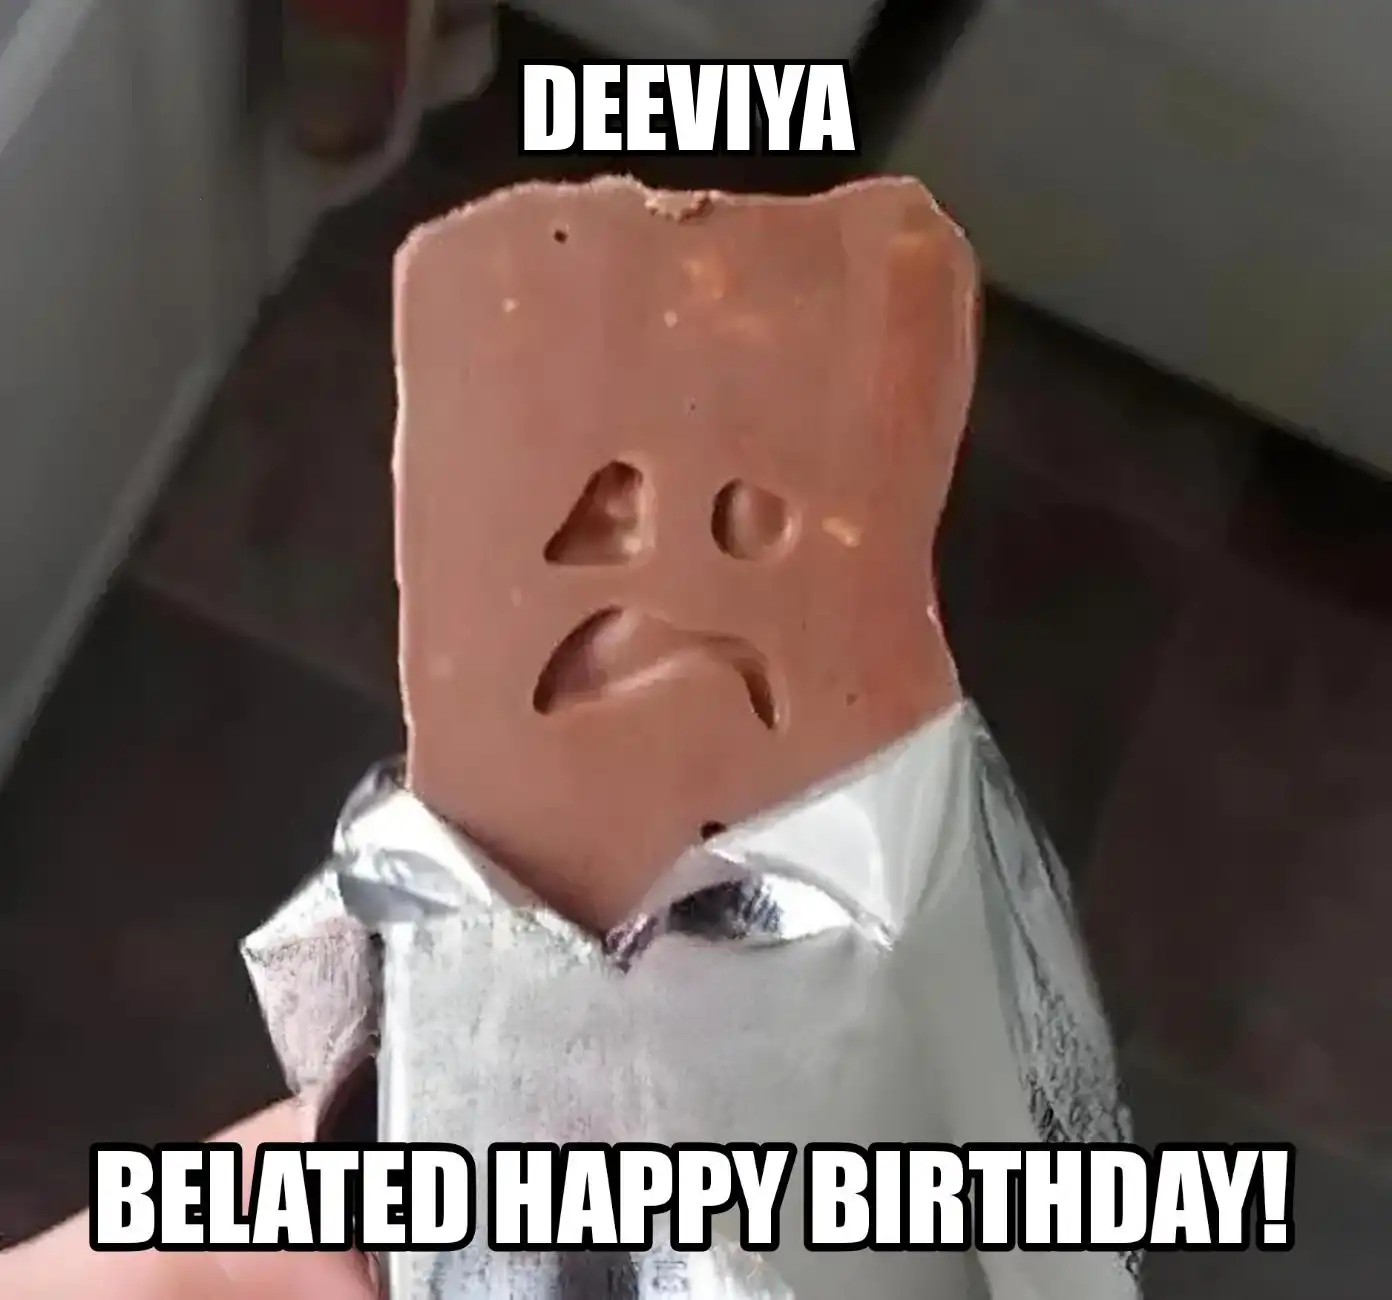 Happy Birthday Deeviya Belated Happy Birthday Meme